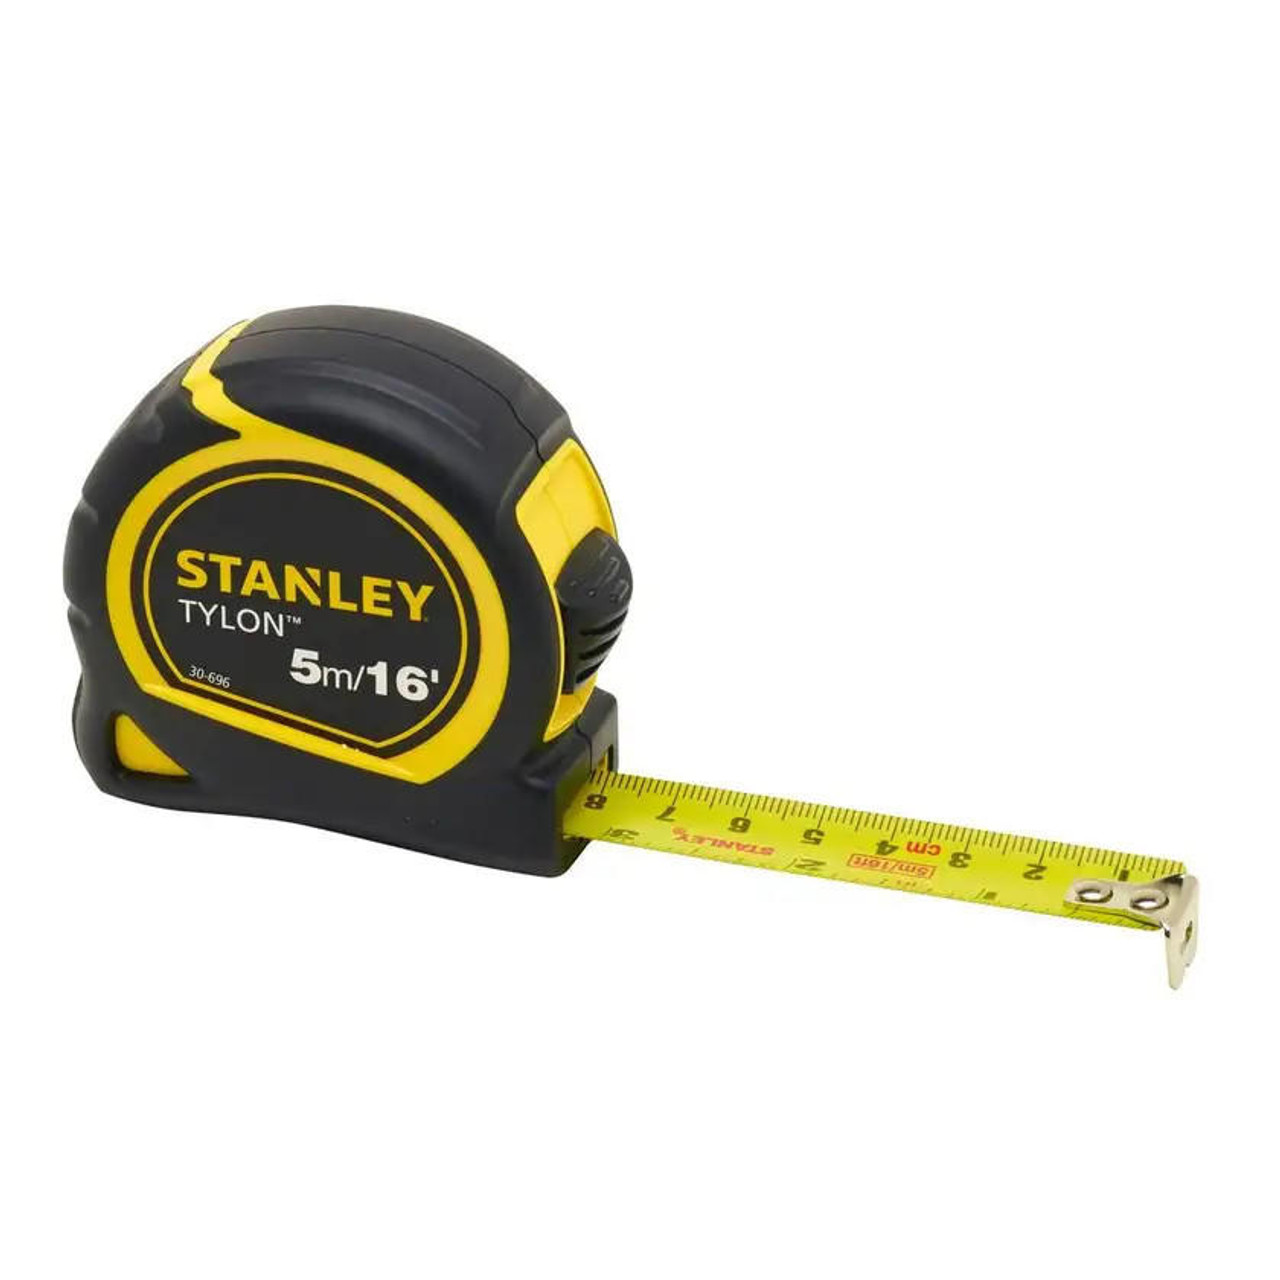 Stanley STANLEY TAPE MEASURE   5m 16ft TYLON 0-30-696